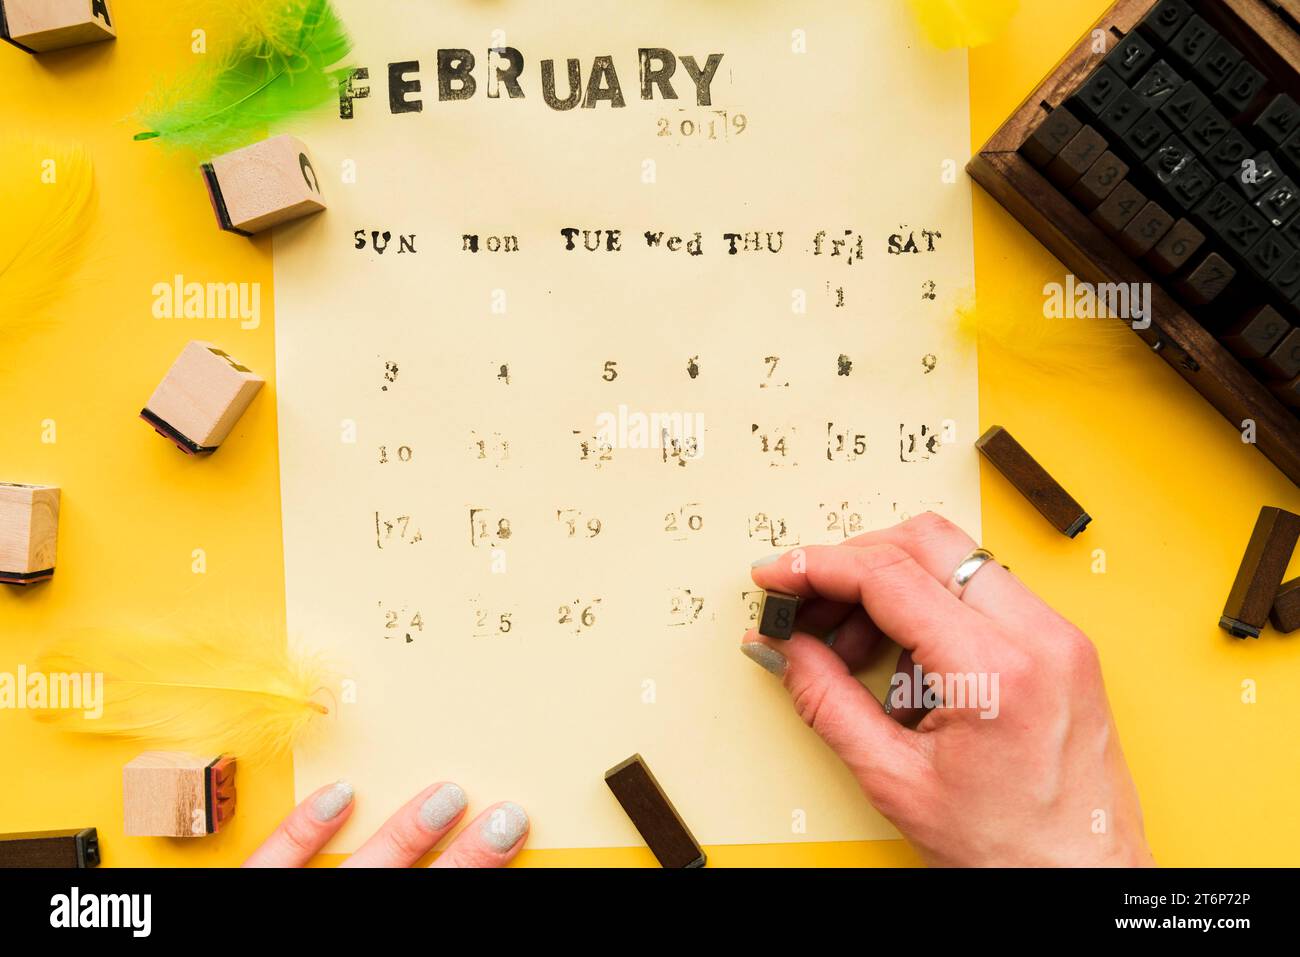 Gros plan la main de la personne faisant le calendrier de février fait à la main avec des blocs typographiques Banque D'Images